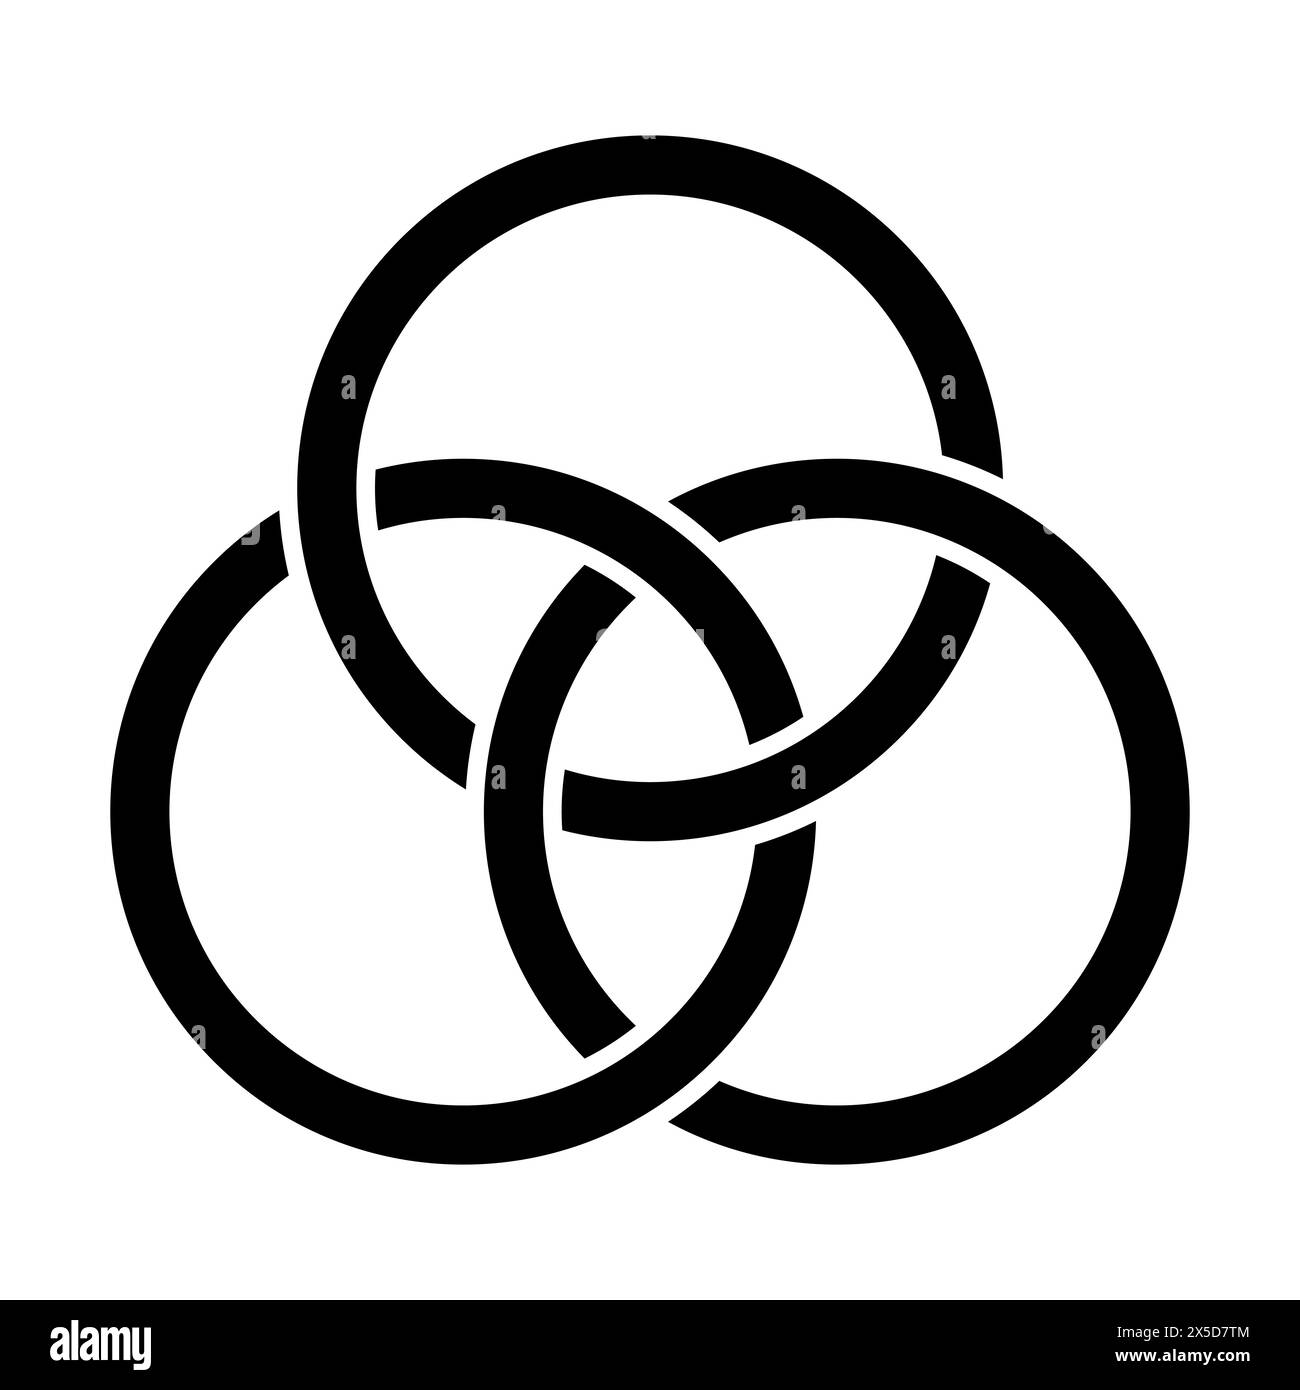 Emblema della Trinità, tre cerchi interlacciati, un antico simbolo cristiano, che rappresenta l'unione di padre, figlio e Spirito Santo. Foto Stock